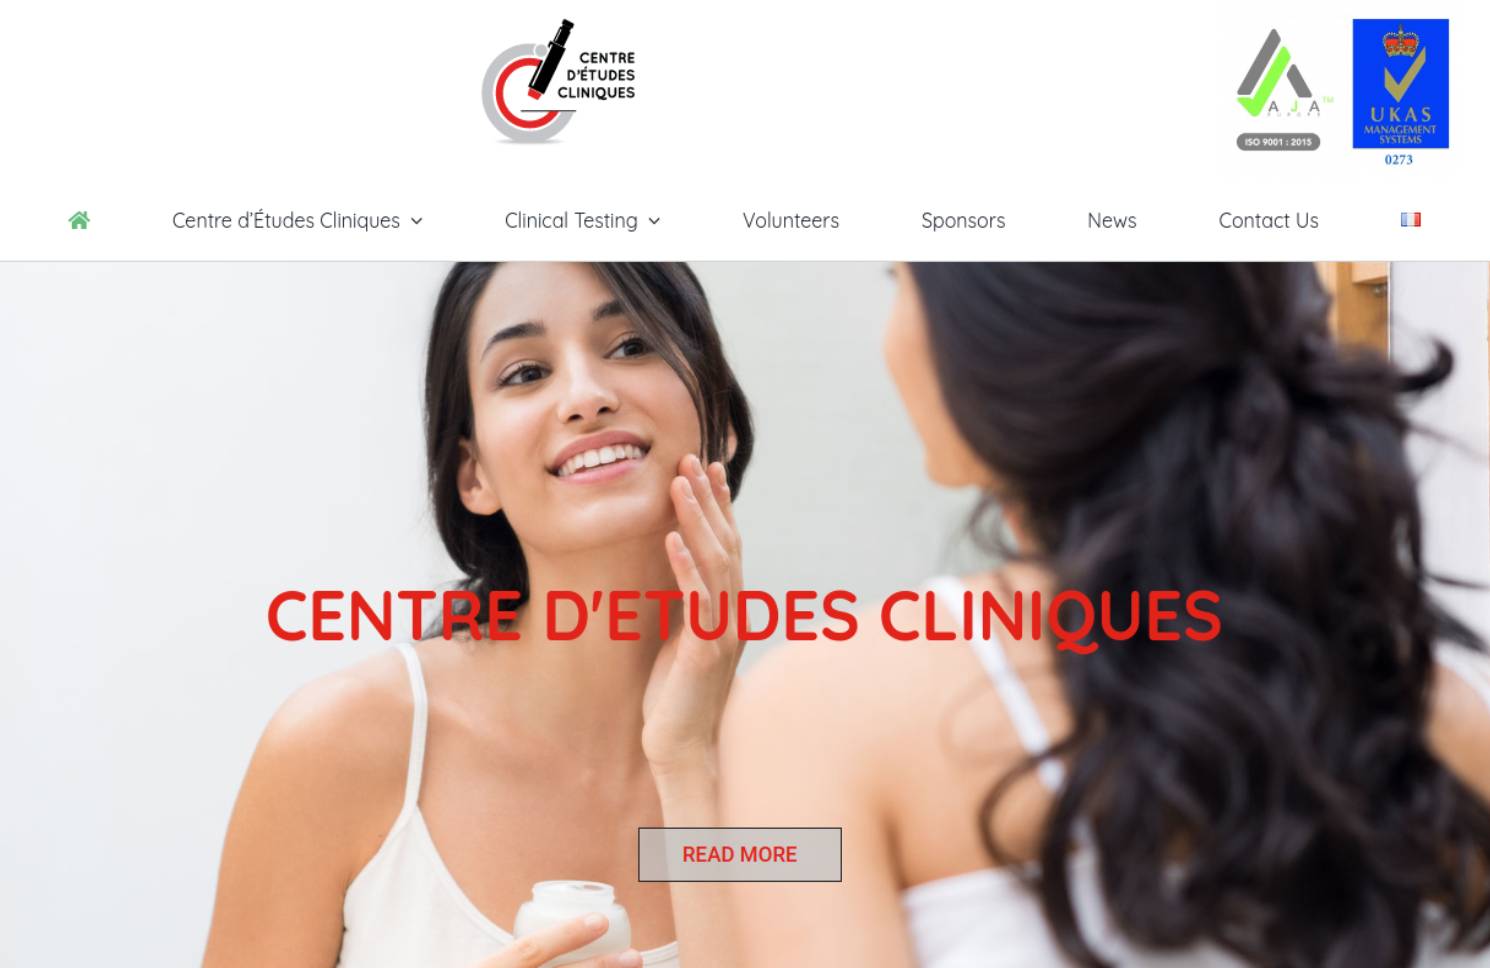 The Centre d’Etudes Cliniques